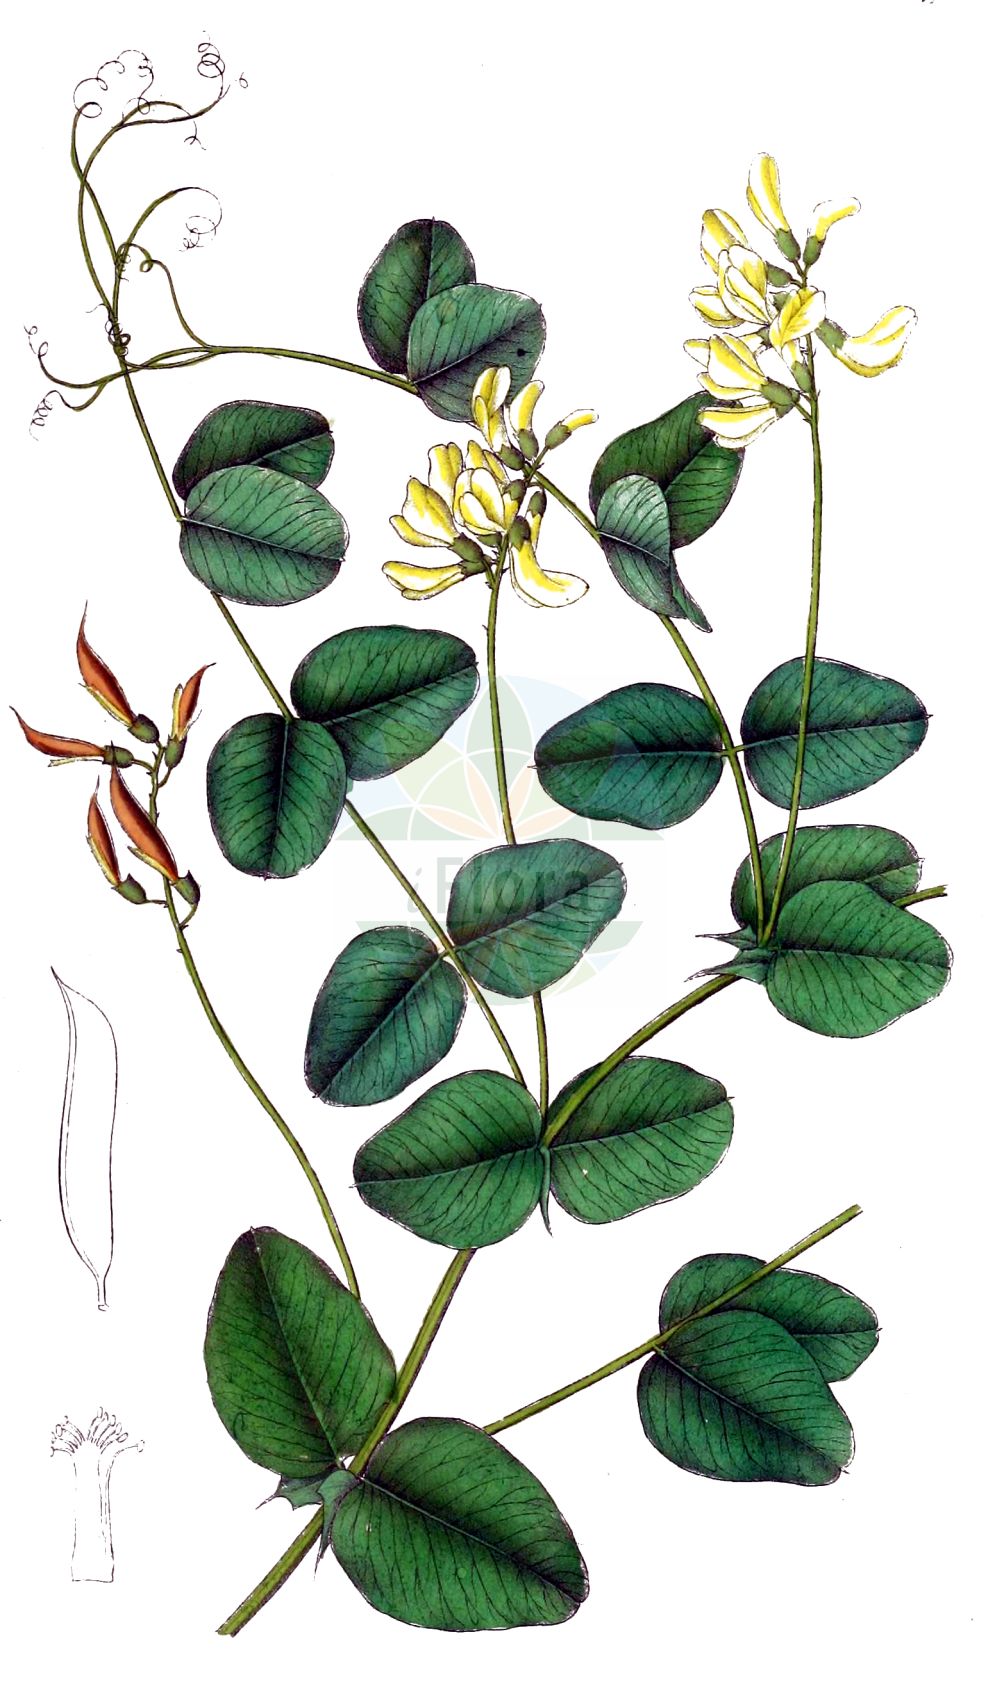 Historische Abbildung von Vicia pisiformis (Erbsen-Wicke - Pale-flower Vetch). Das Bild zeigt Blatt, Bluete, Frucht und Same. ---- Historical Drawing of Vicia pisiformis (Erbsen-Wicke - Pale-flower Vetch). The image is showing leaf, flower, fruit and seed.(Vicia pisiformis,Erbsen-Wicke,Pale-flower Vetch,Ervum pisiforme,Vicia pisiformis,Erbsen-Wicke,Pale-flower Vetch,Pale-flowered Vetch,Pea-shaped Vetch,Pea Vetch,Vicia,Wicke,Vetch,Fabaceae,Schmetterlingsblütler,Pea family,Blatt,Bluete,Frucht,Same,leaf,flower,fruit,seed,Dietrich (1833-1844))